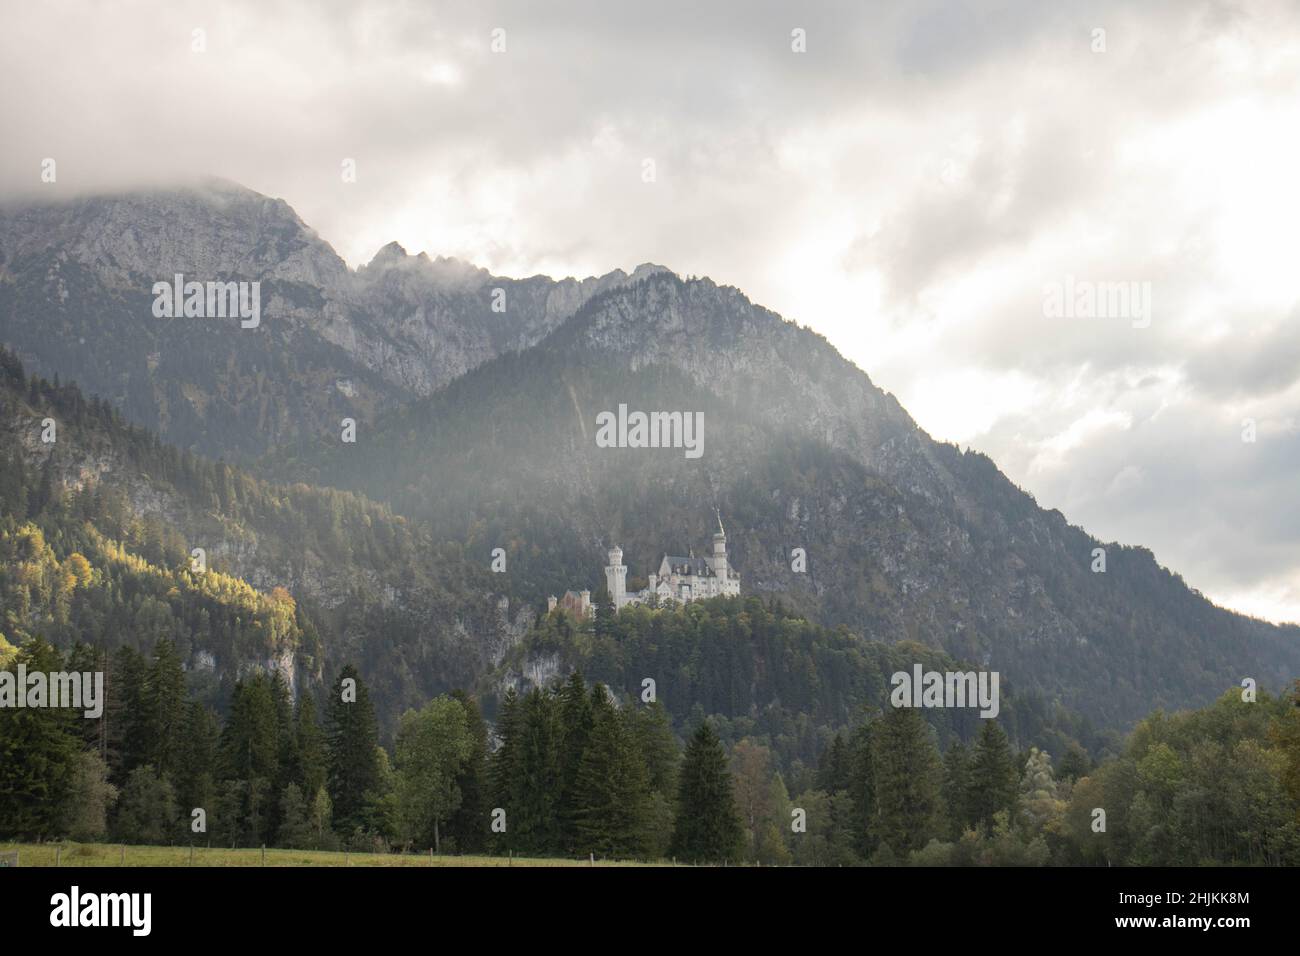 Das malerische Märchenschloß im Ost-Allgäu bei Füssen im Bergpanorama, aufgenommen nahe der Talstation Tegelbergbahn Stock Photo